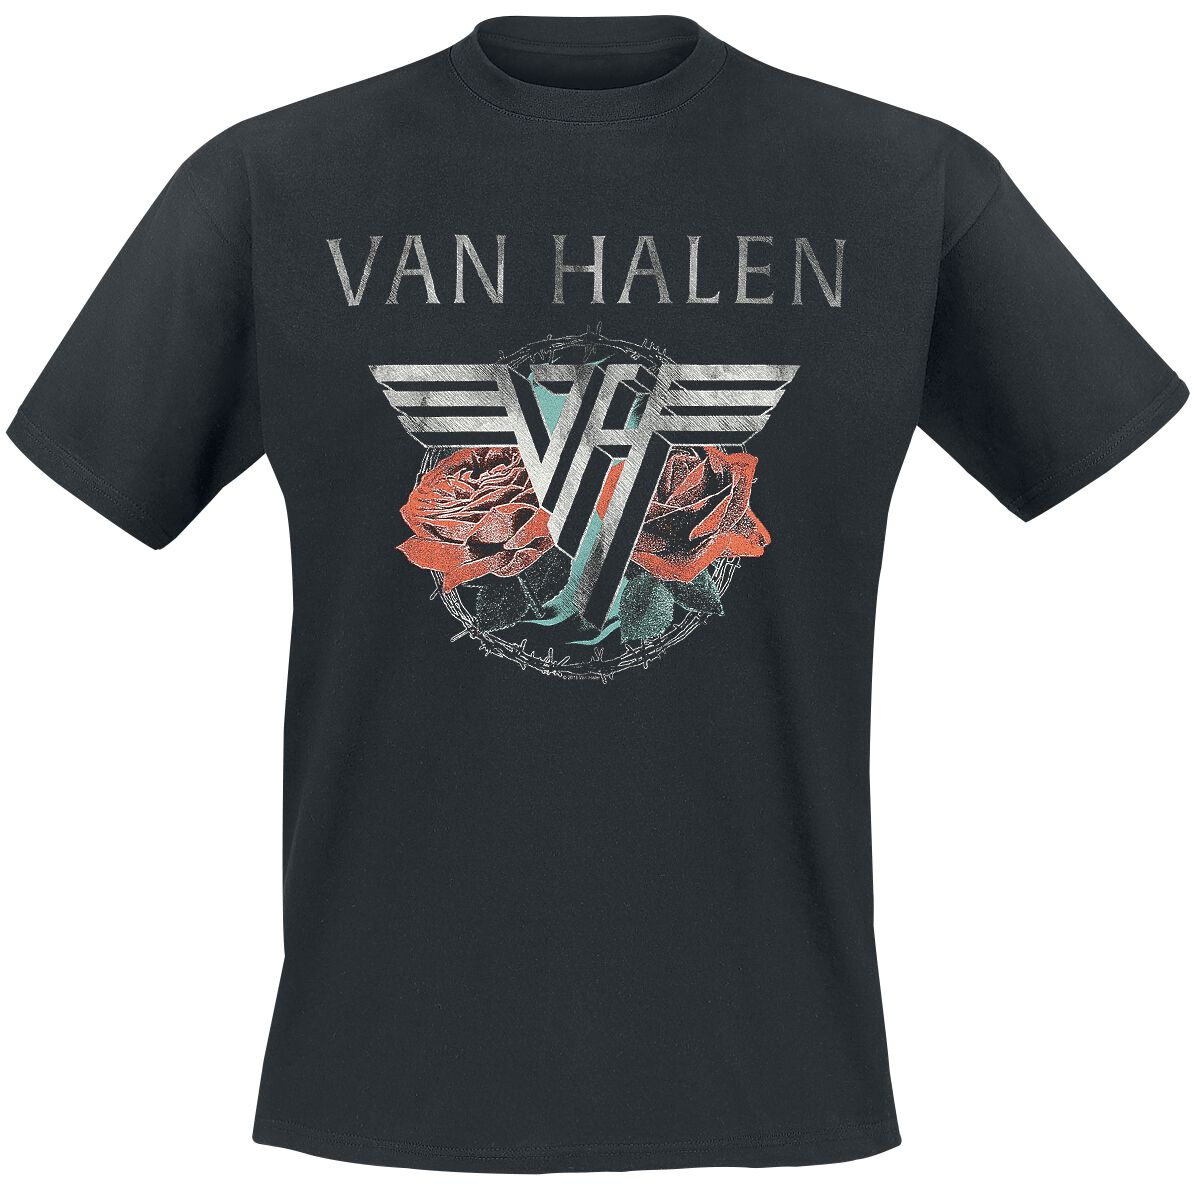 Van Halen T-Shirt - Tour 1984 - S bis 3XL - für Männer - Größe L - schwarz  - Lizenziertes Merchandise!